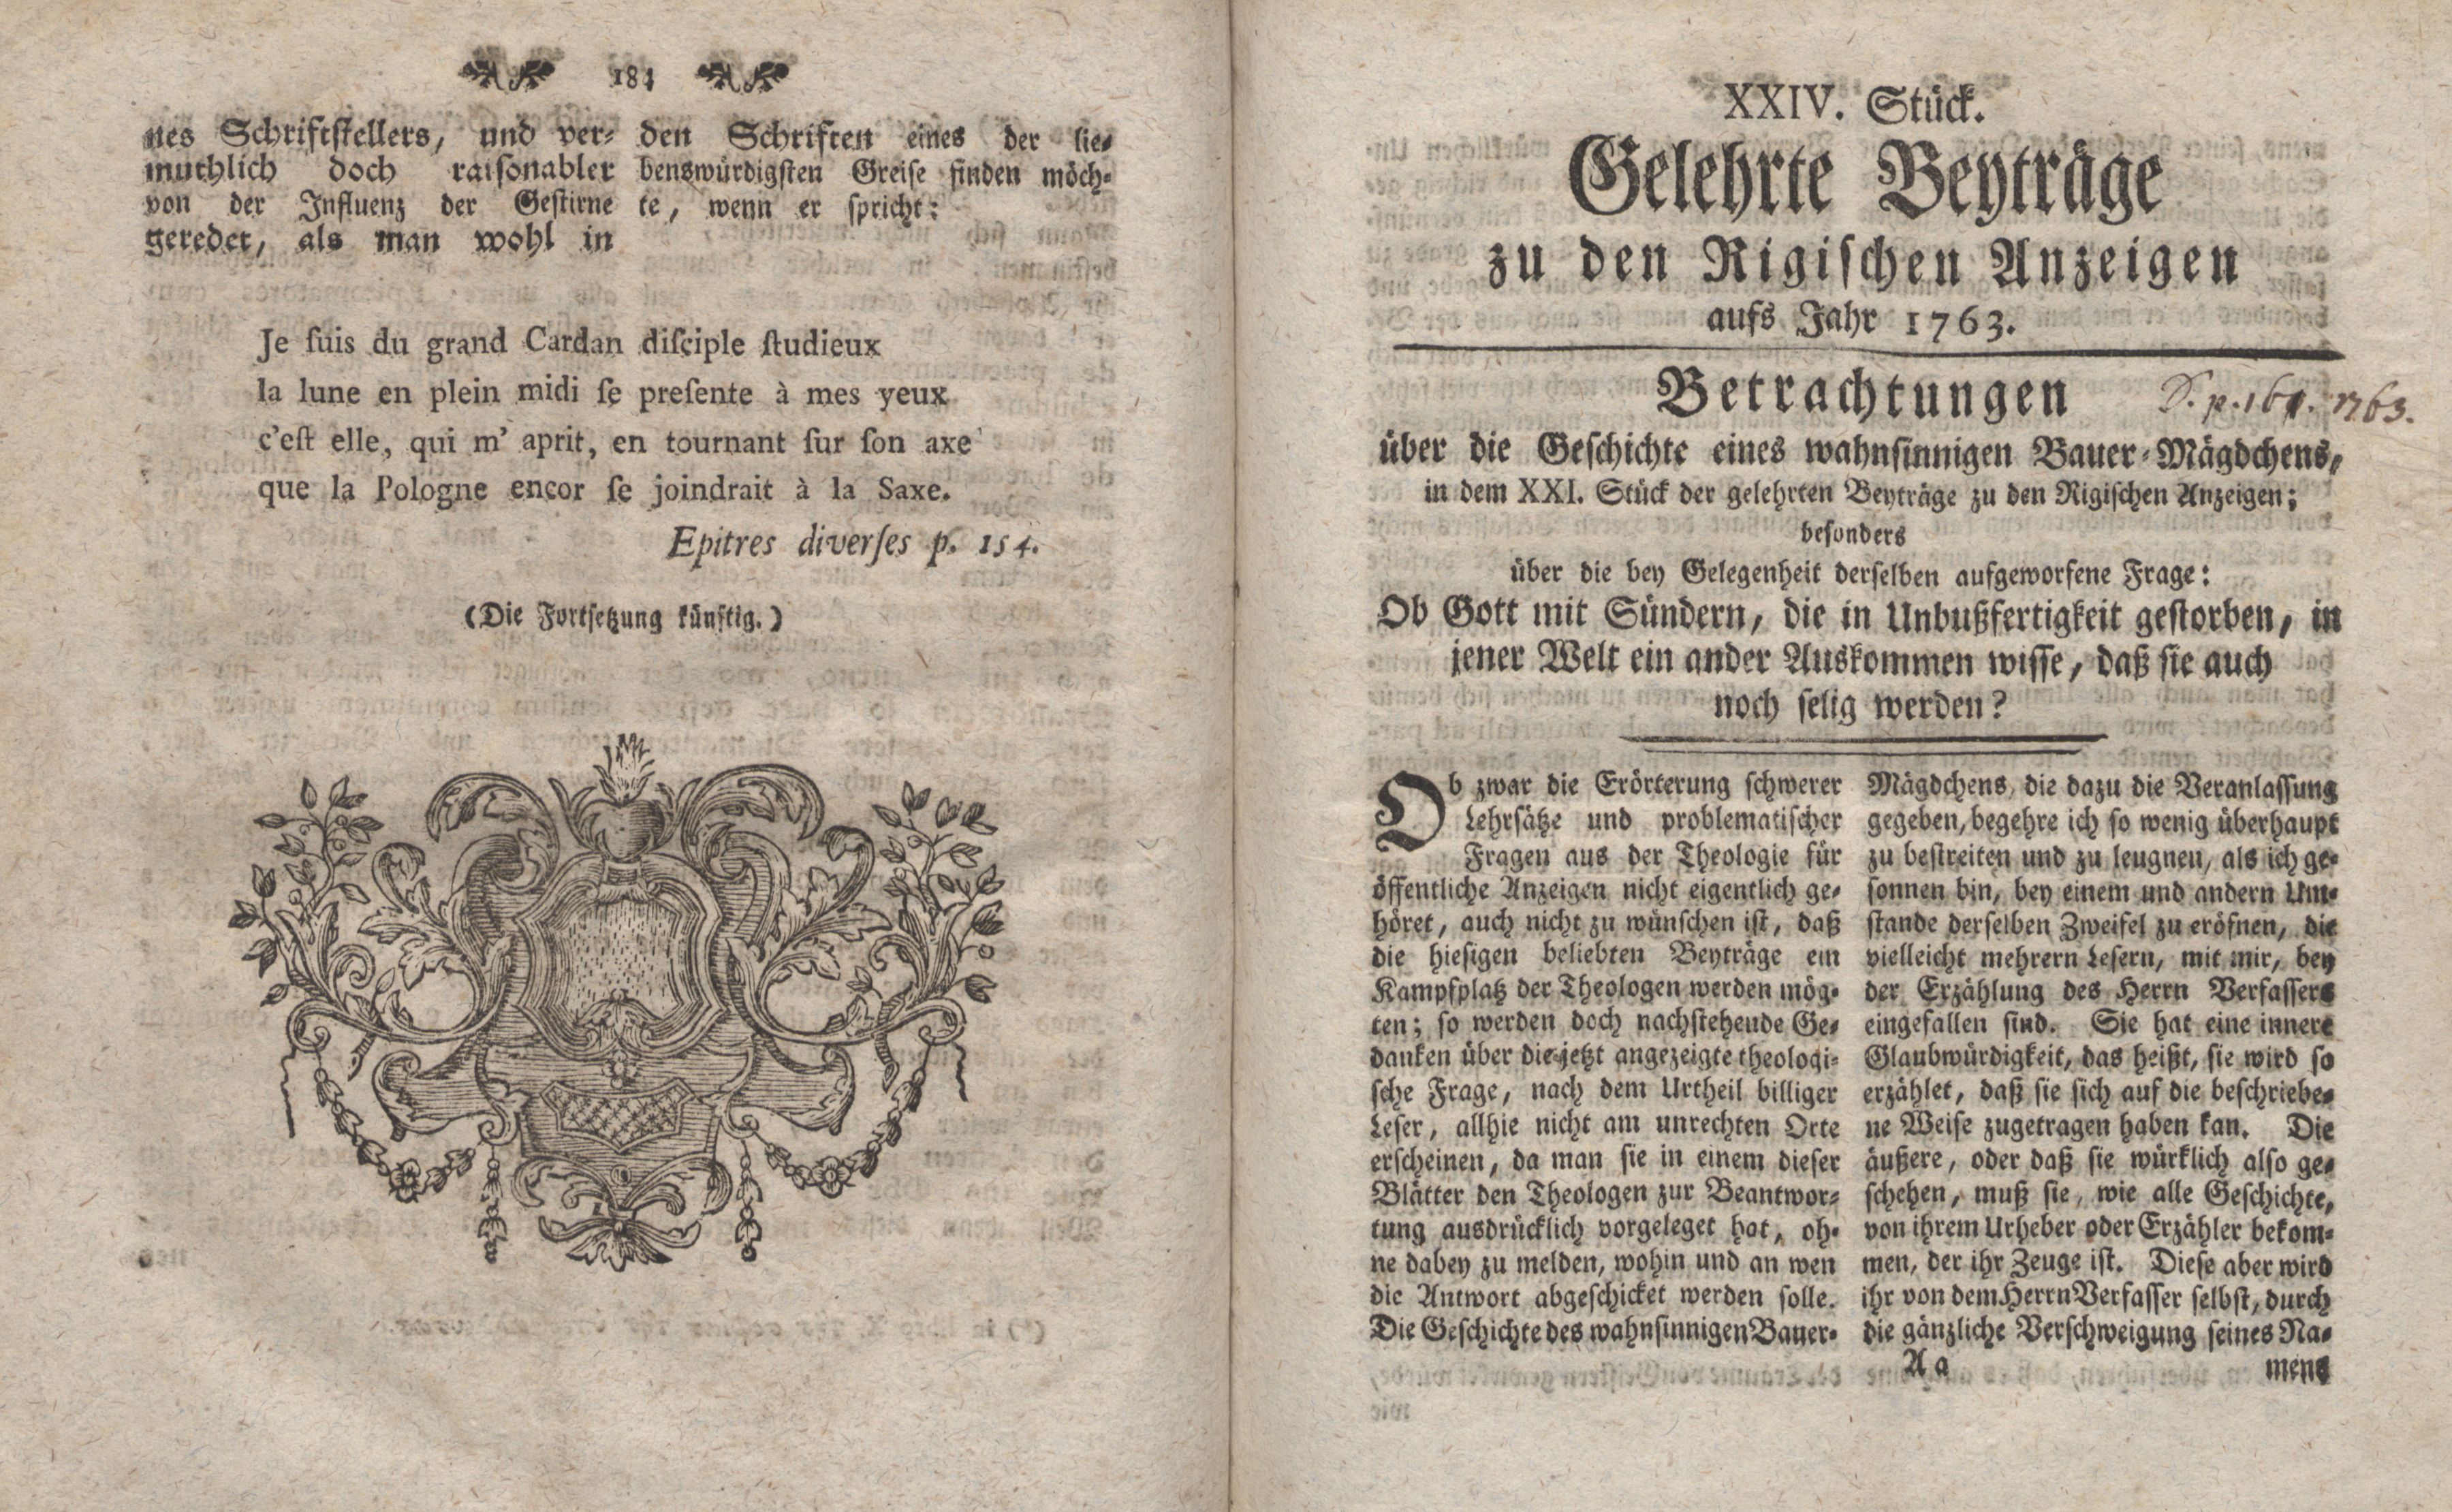 Betrachtungen über die Geschichte eines wahnsinnigen Bauer-Mägdchens [1] (1763) | 1. (184-185) Основной текст